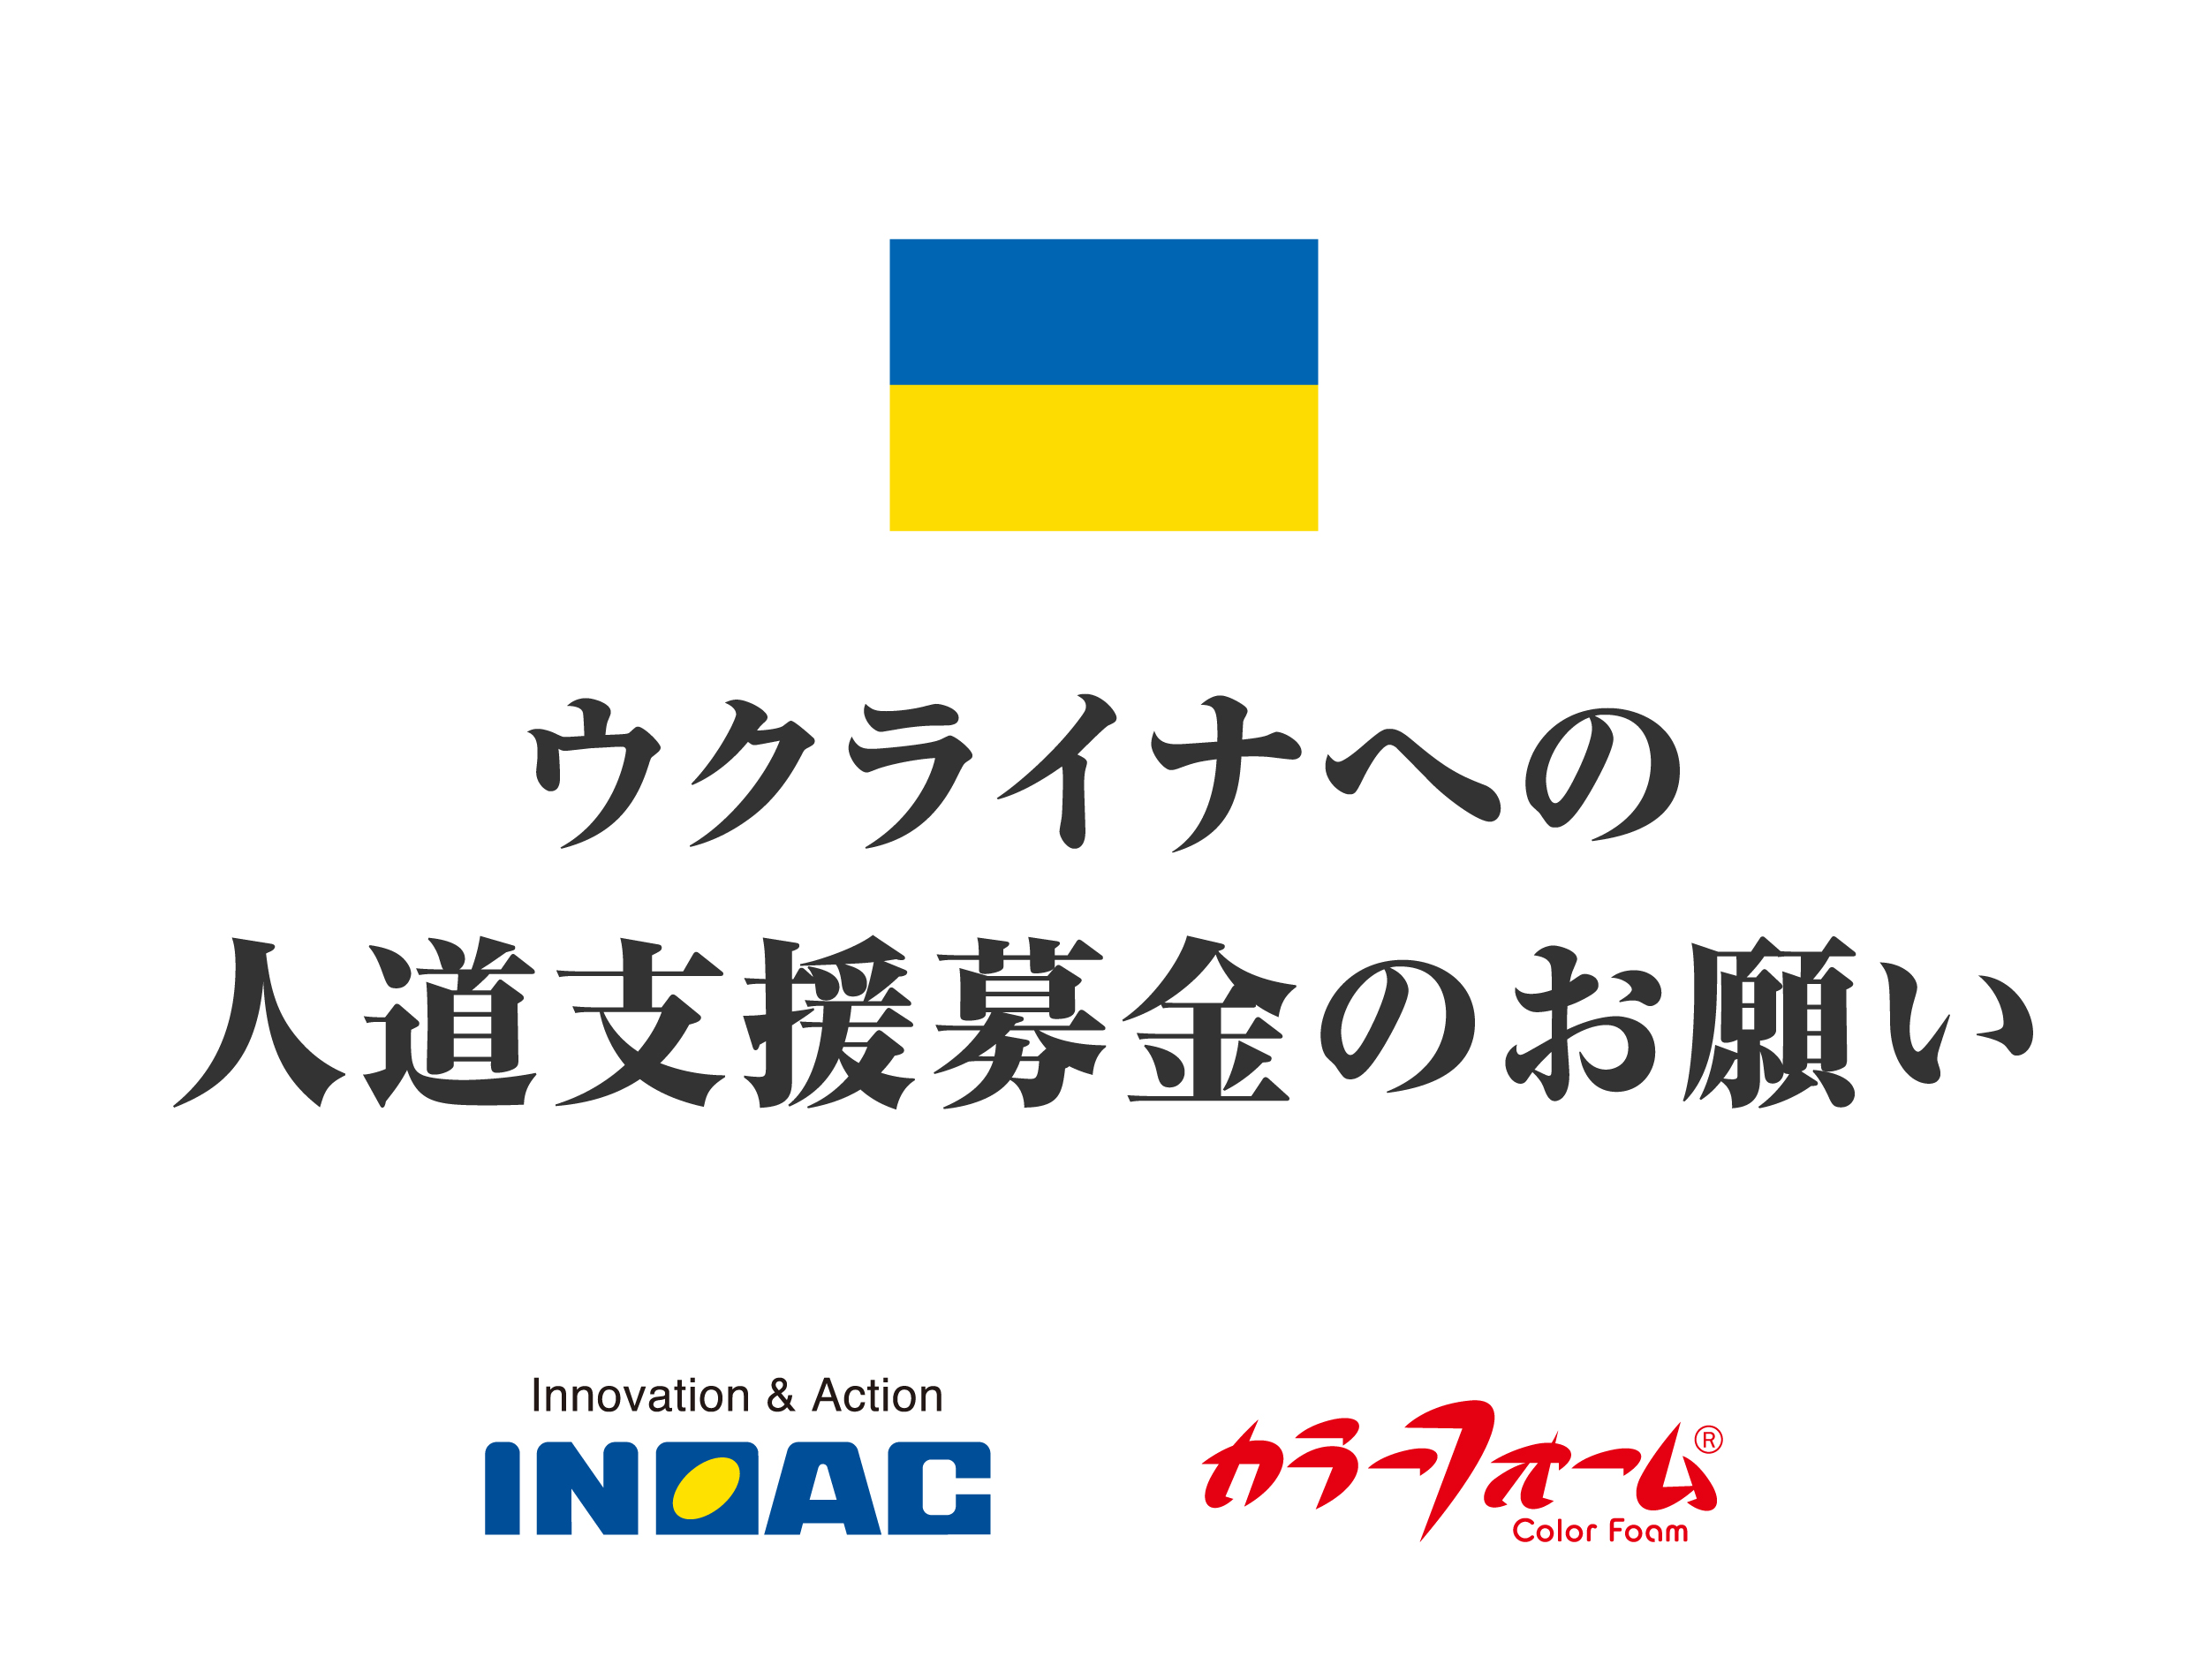 ウクライナへの人道支援を目的とした募金実施のお知らせ 株式会社イノアックコーポレーションのプレスリリース